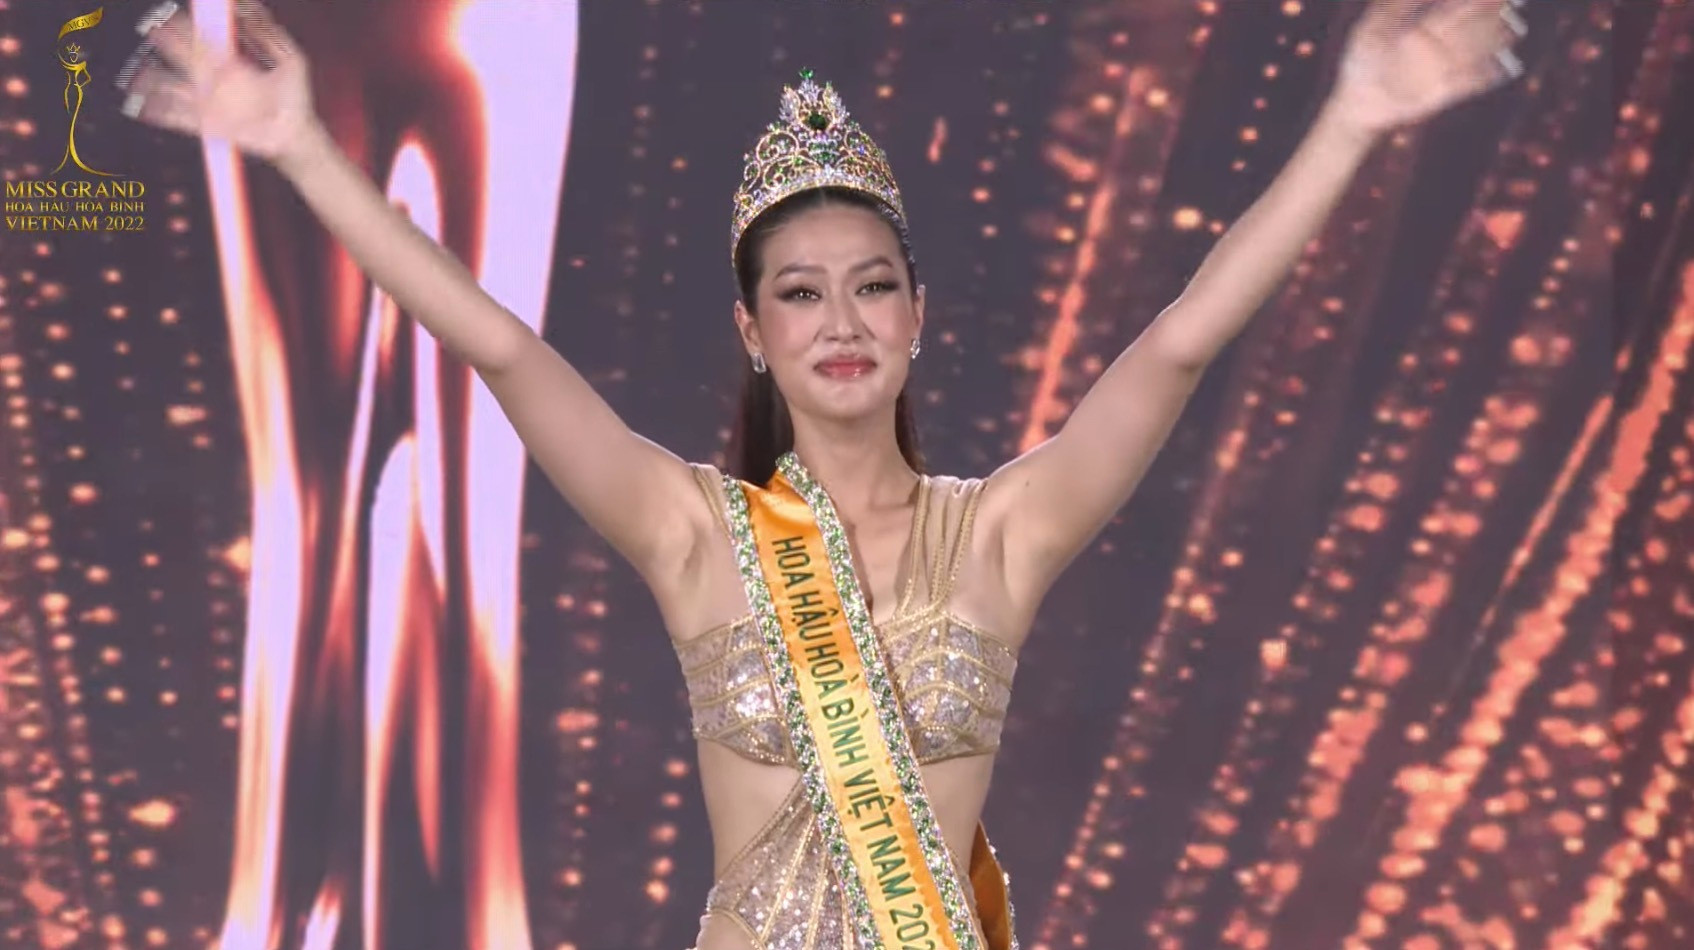 Đoàn Thiên Ân đăng quang Miss Grand Vietnam - Hoa hậu Hòa bình Việt Nam 2022 - 1